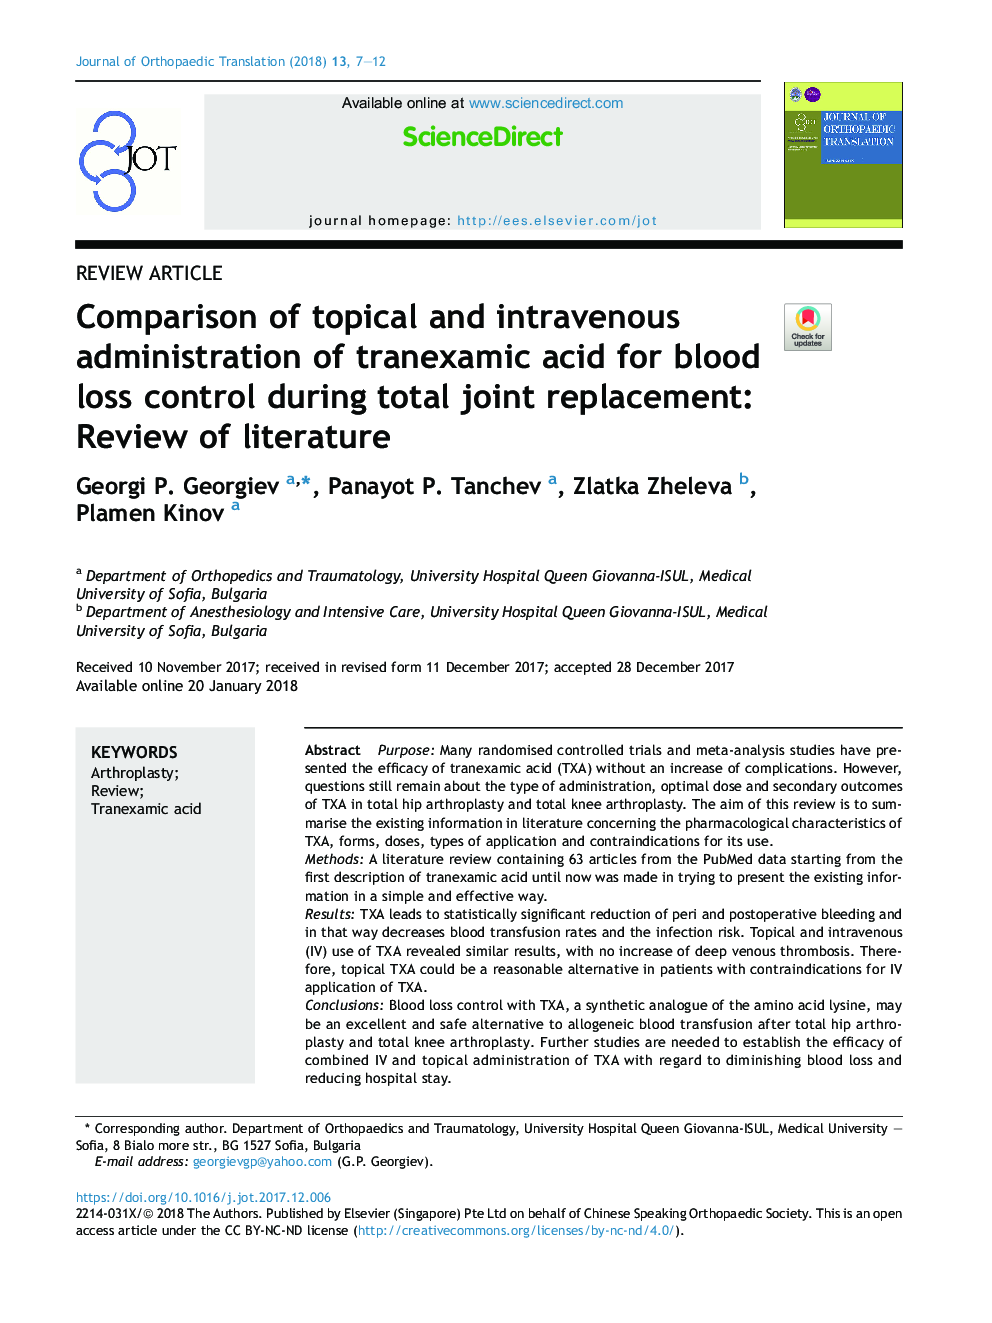 مقایسه تجویز موضعی و وریدی اسید تانونکسامیک برای کنترل خونریزی در طول جایگزینی مفصل مفصلی: مرور ادبیات 